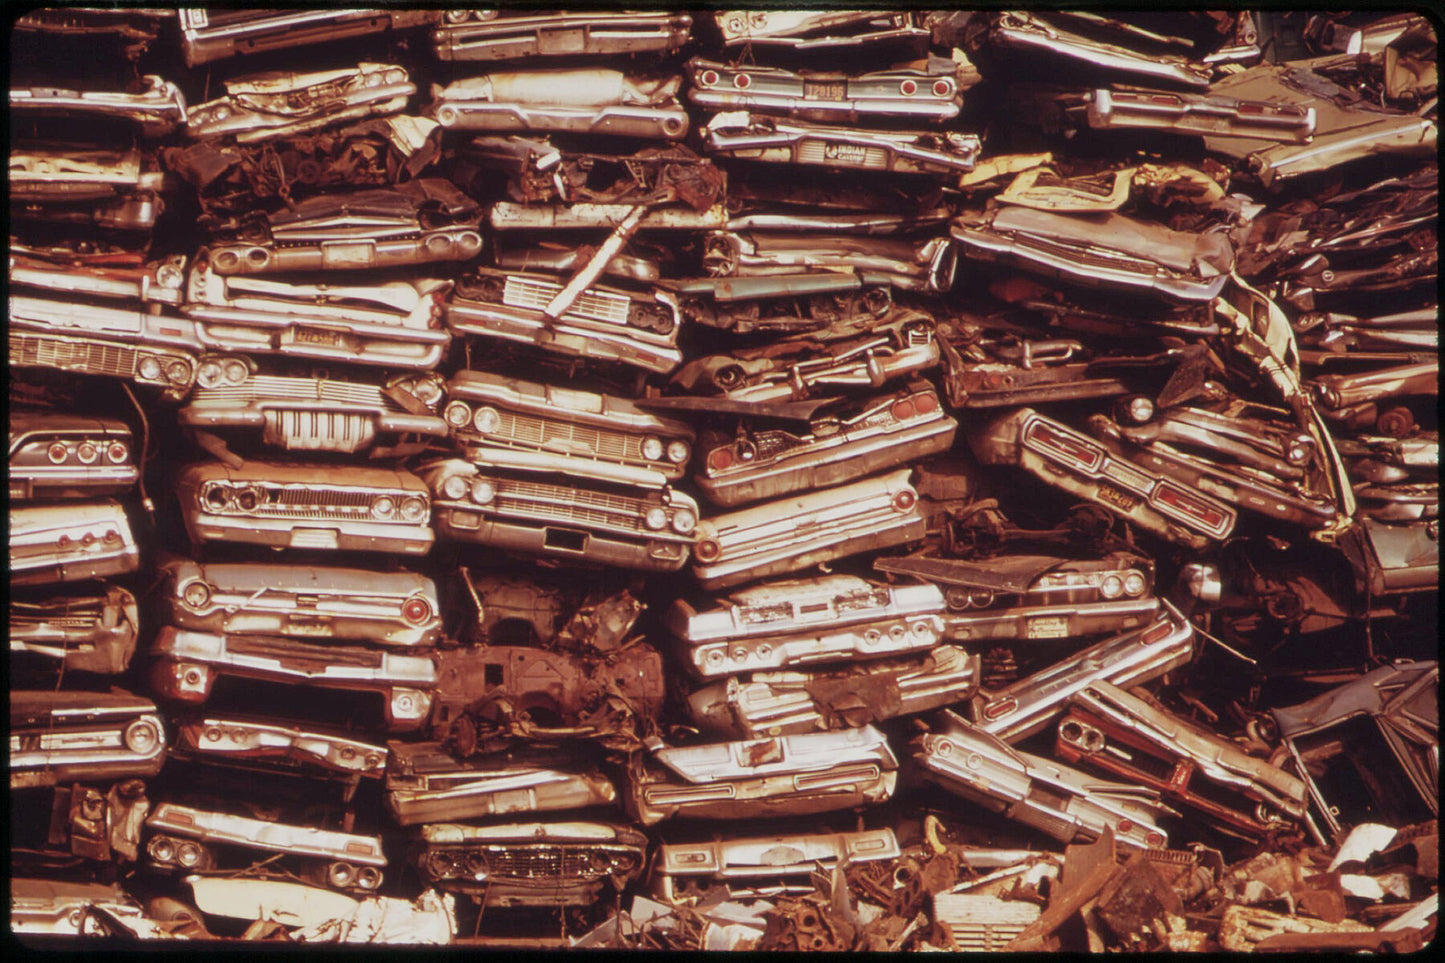 Coches apilados en el depósito de chatarra de la ciudad serán utilizados como chatarra por Dick Swanson - agosto de 1973